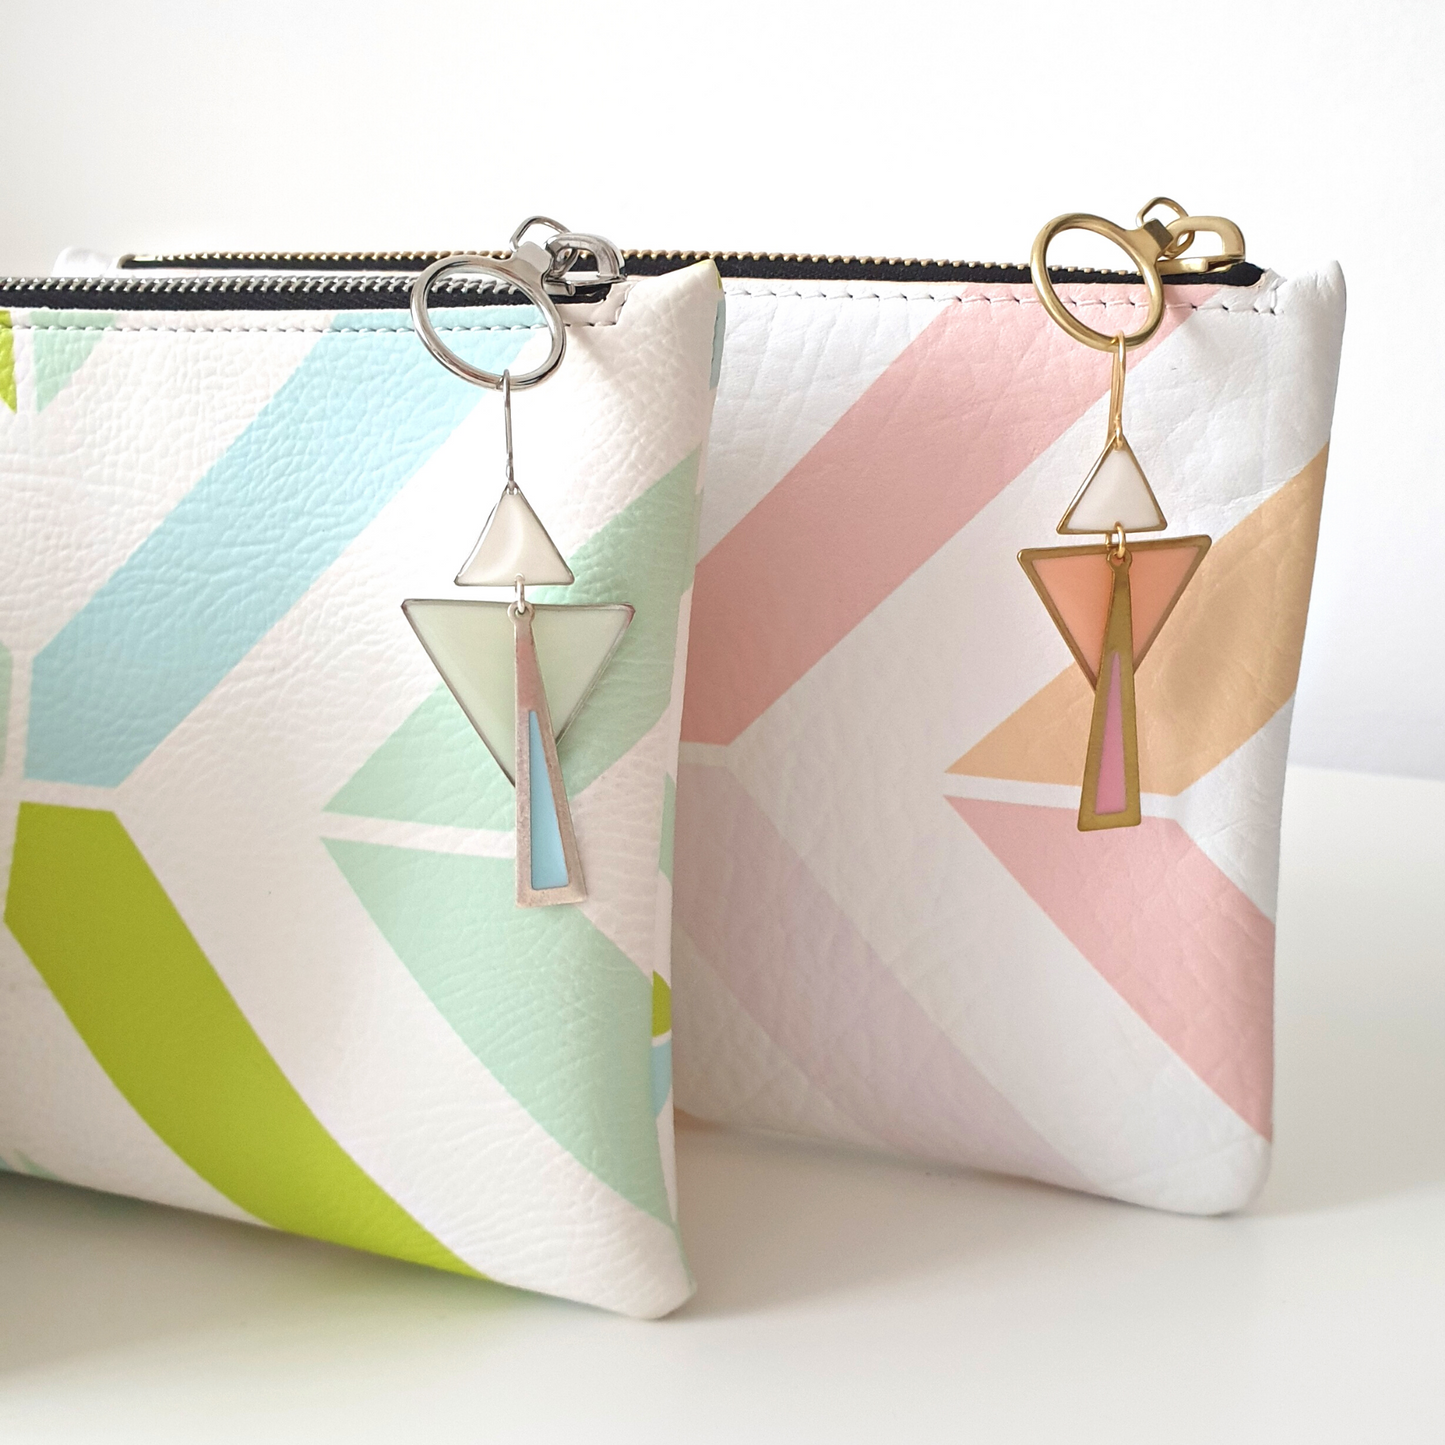 Geometric Clutch & Earrings Gift Set | Pastel Blue & Green